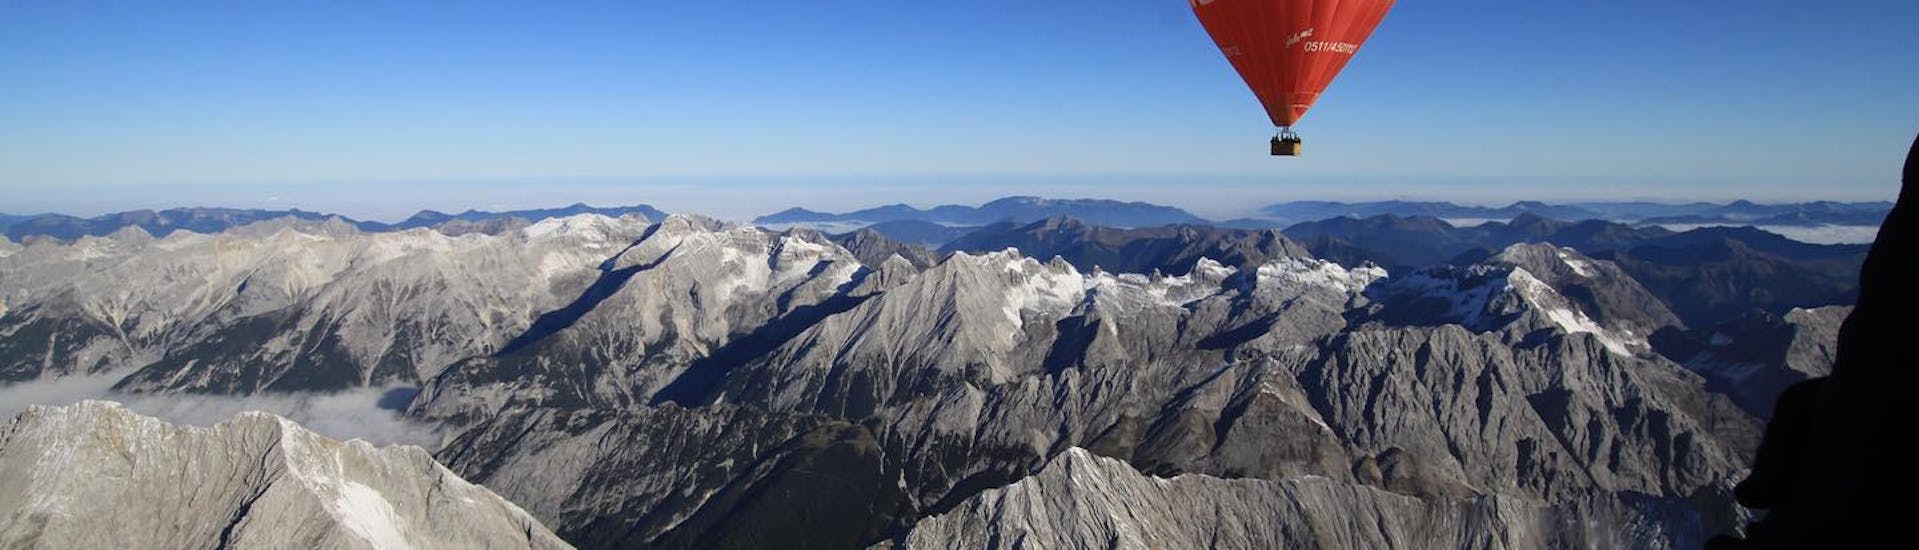 Volare sopra le Alpi è una grande sensazione che potete provare durante il volo privato in mongolfiera sulla Val Pusteria in estate con Mountain Ballooning Bruneck.